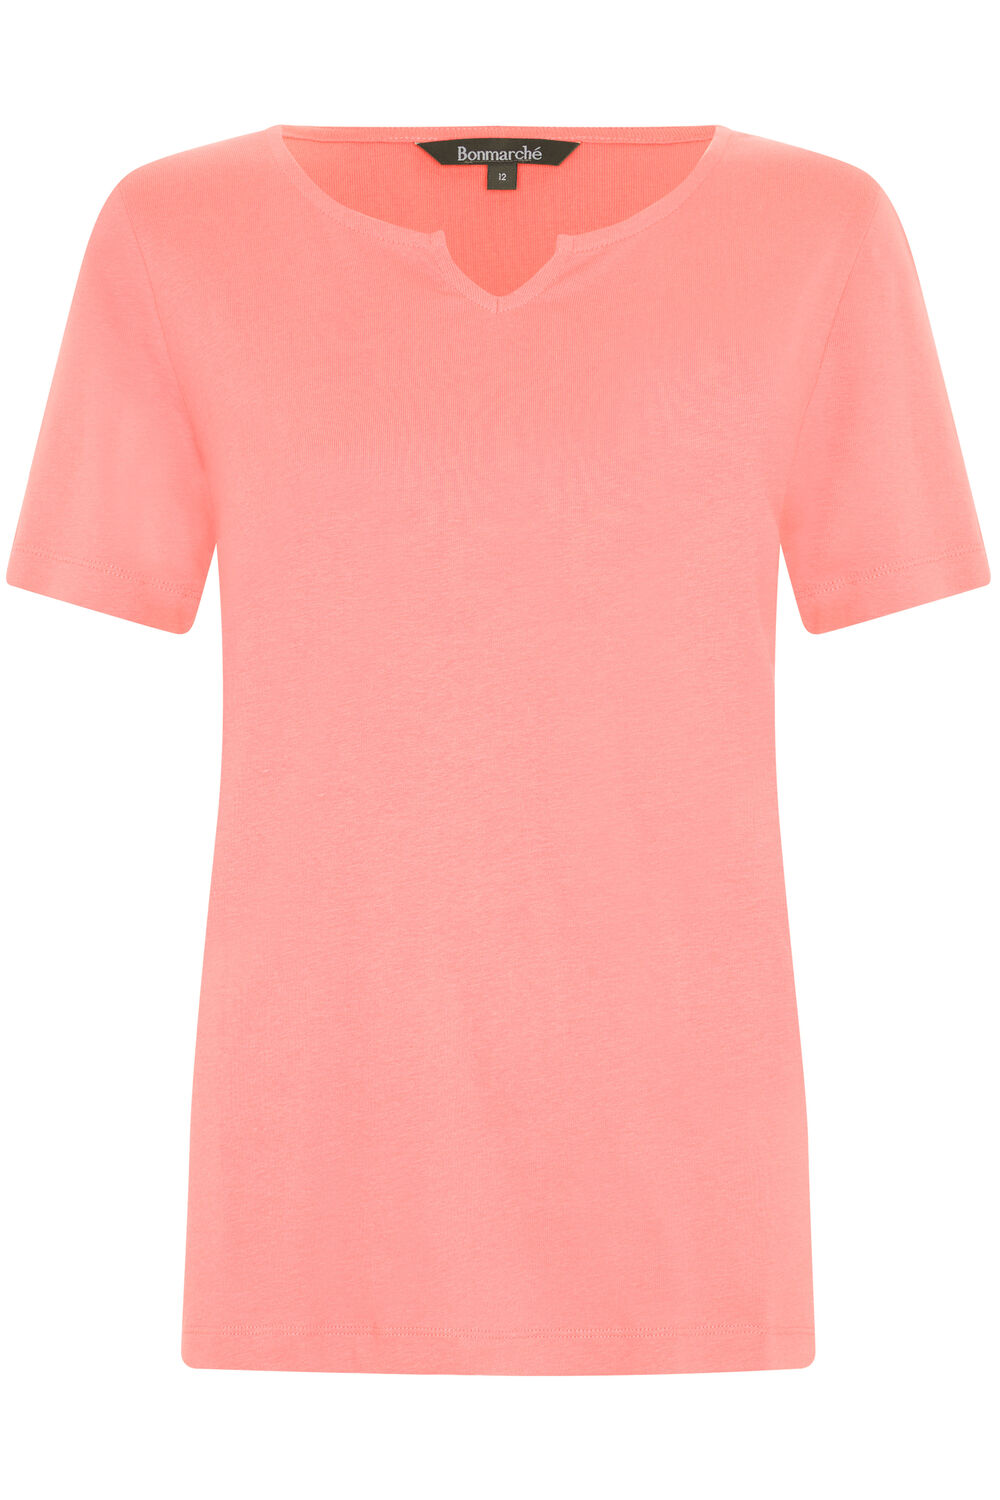 Bonmarche Coral Short Sleeve Plain Notch Neck T-Shirt, Size: 10